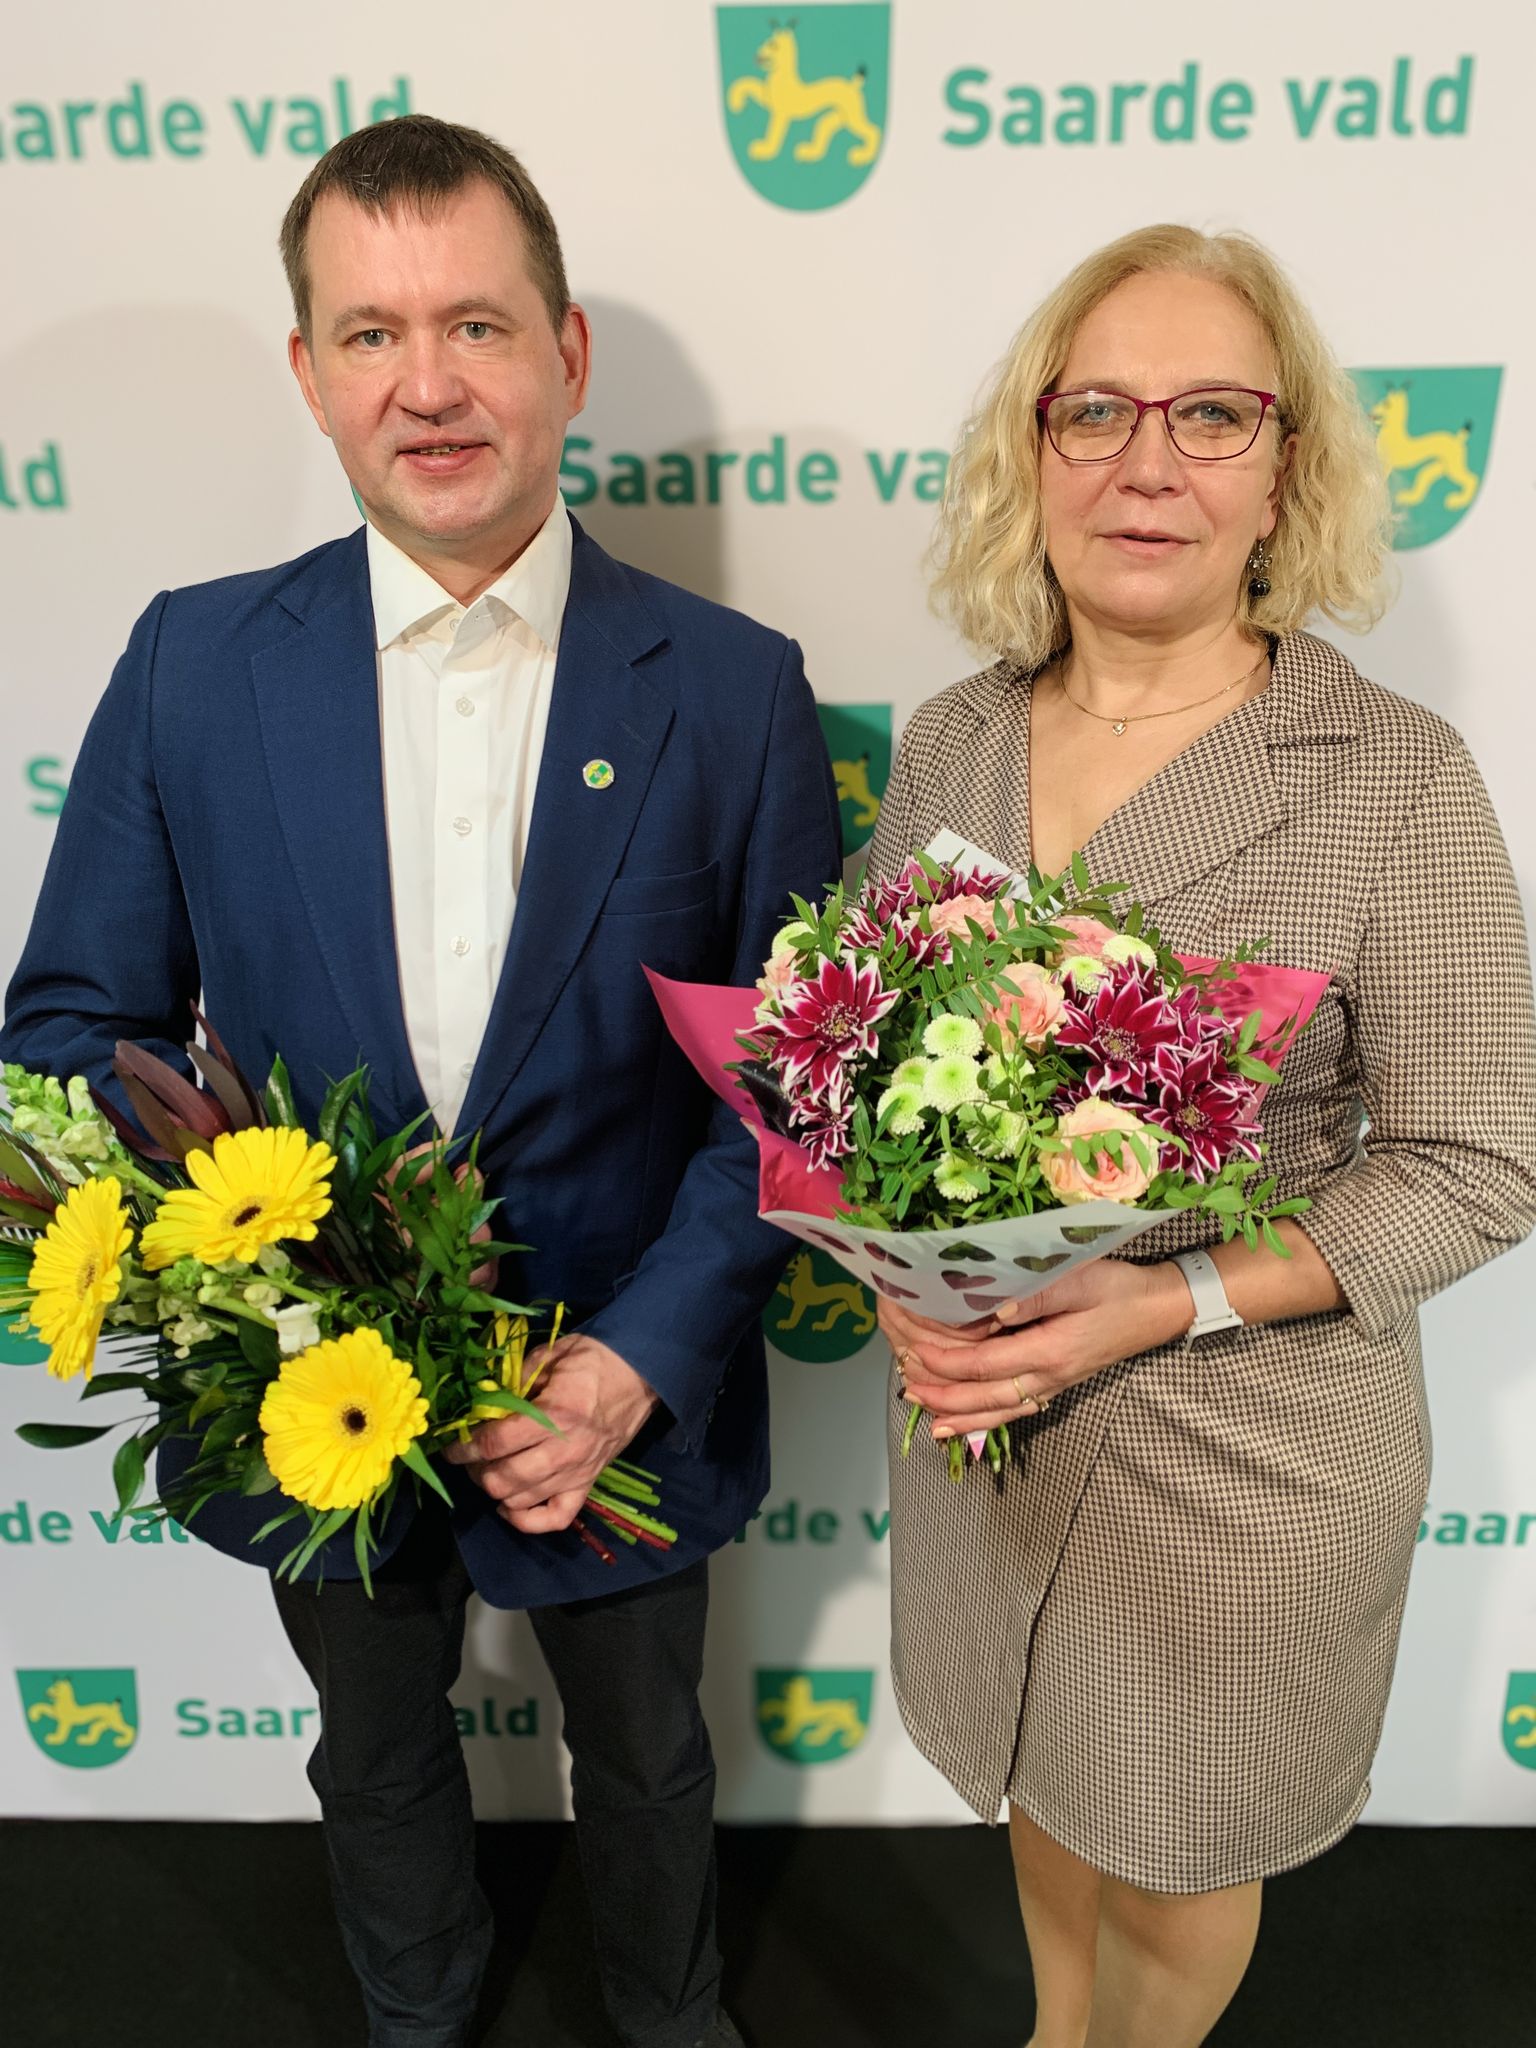 Saarde vallavolikogu esimeheks valiti Eiko Tammist ja aseesimeheks Kadri-Aija Viik.